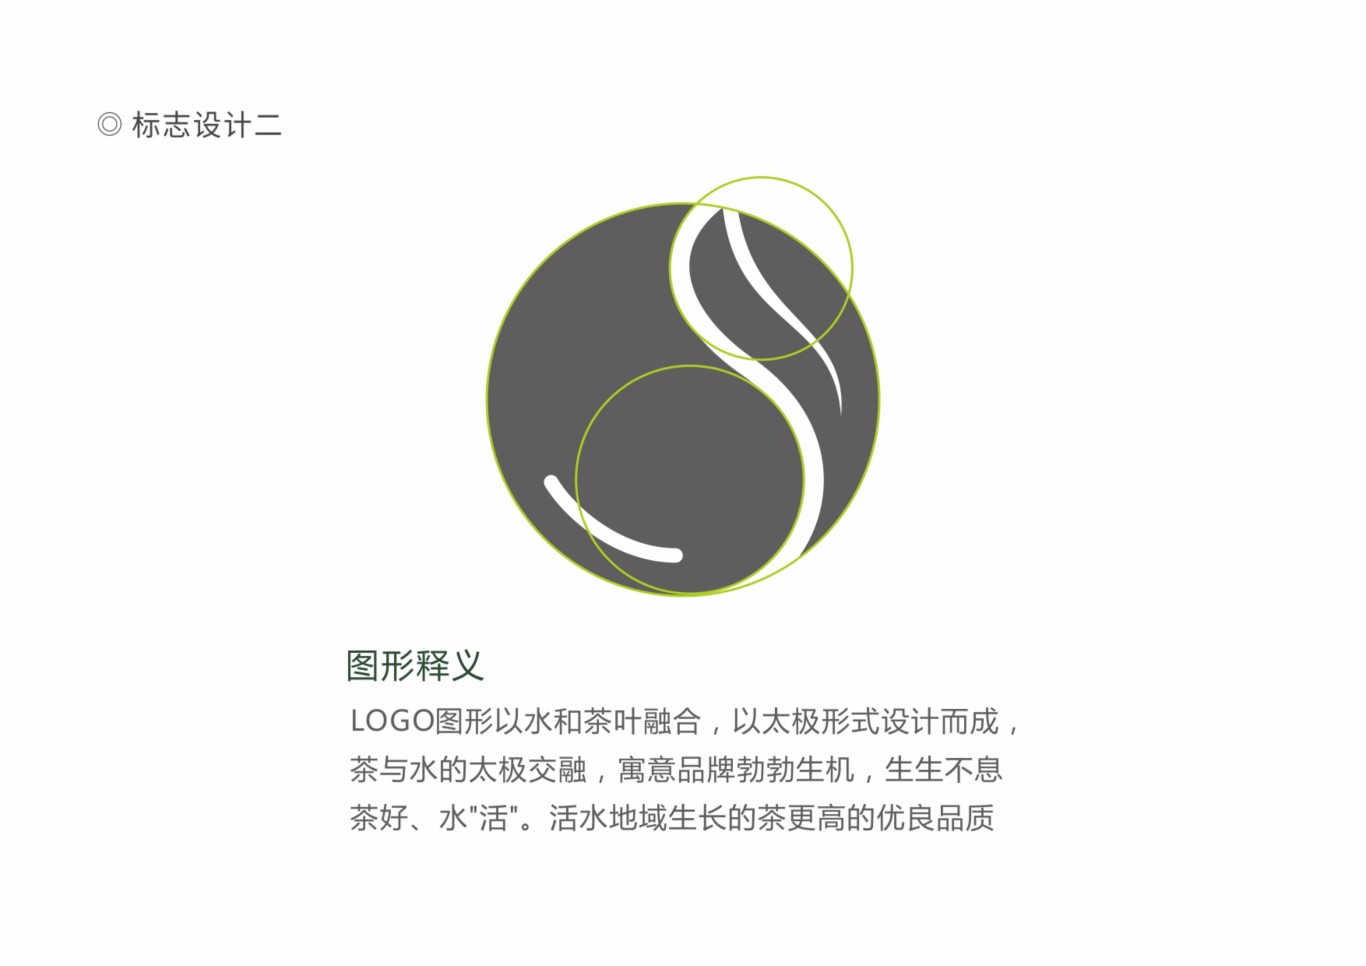 茶品牌LOGO設計圖10